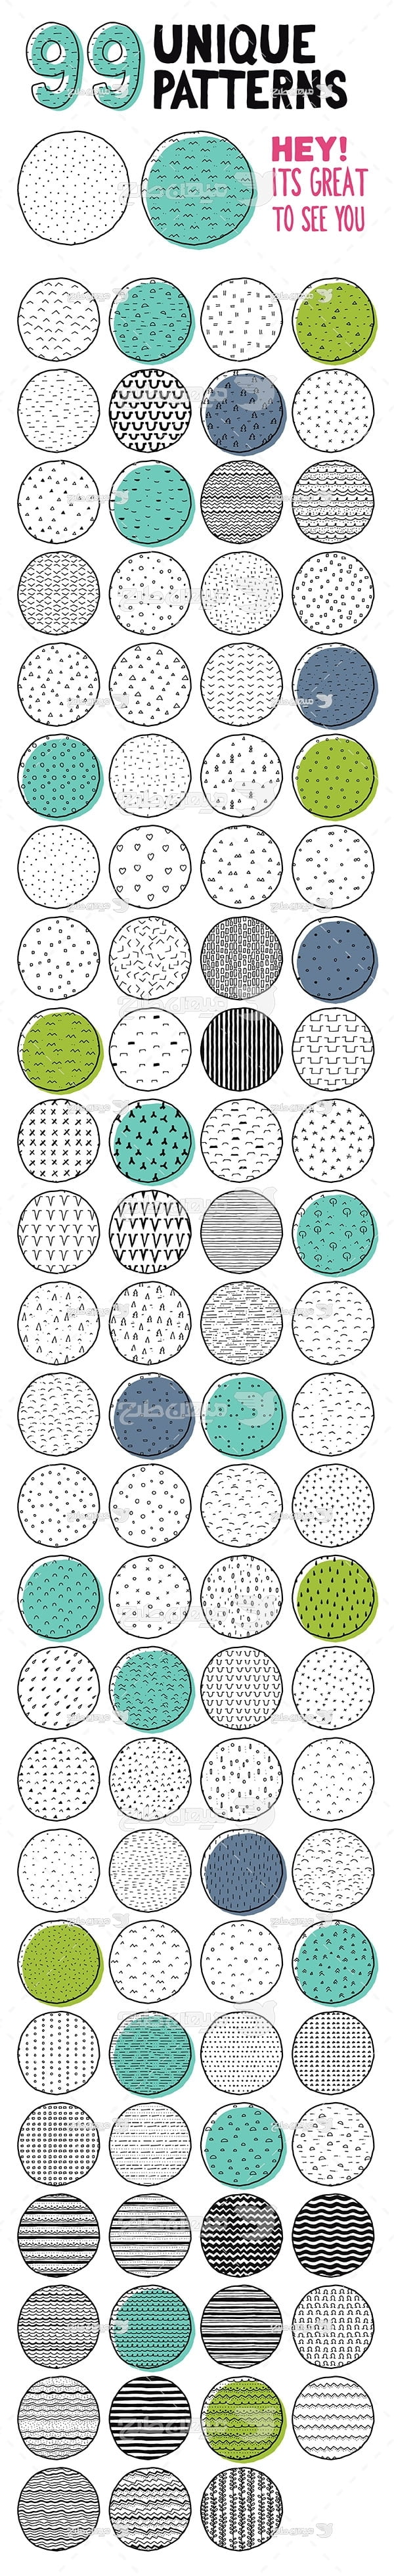 مجموعه ابزارهای فتوشاپ پترن دایره با طرح مختلف